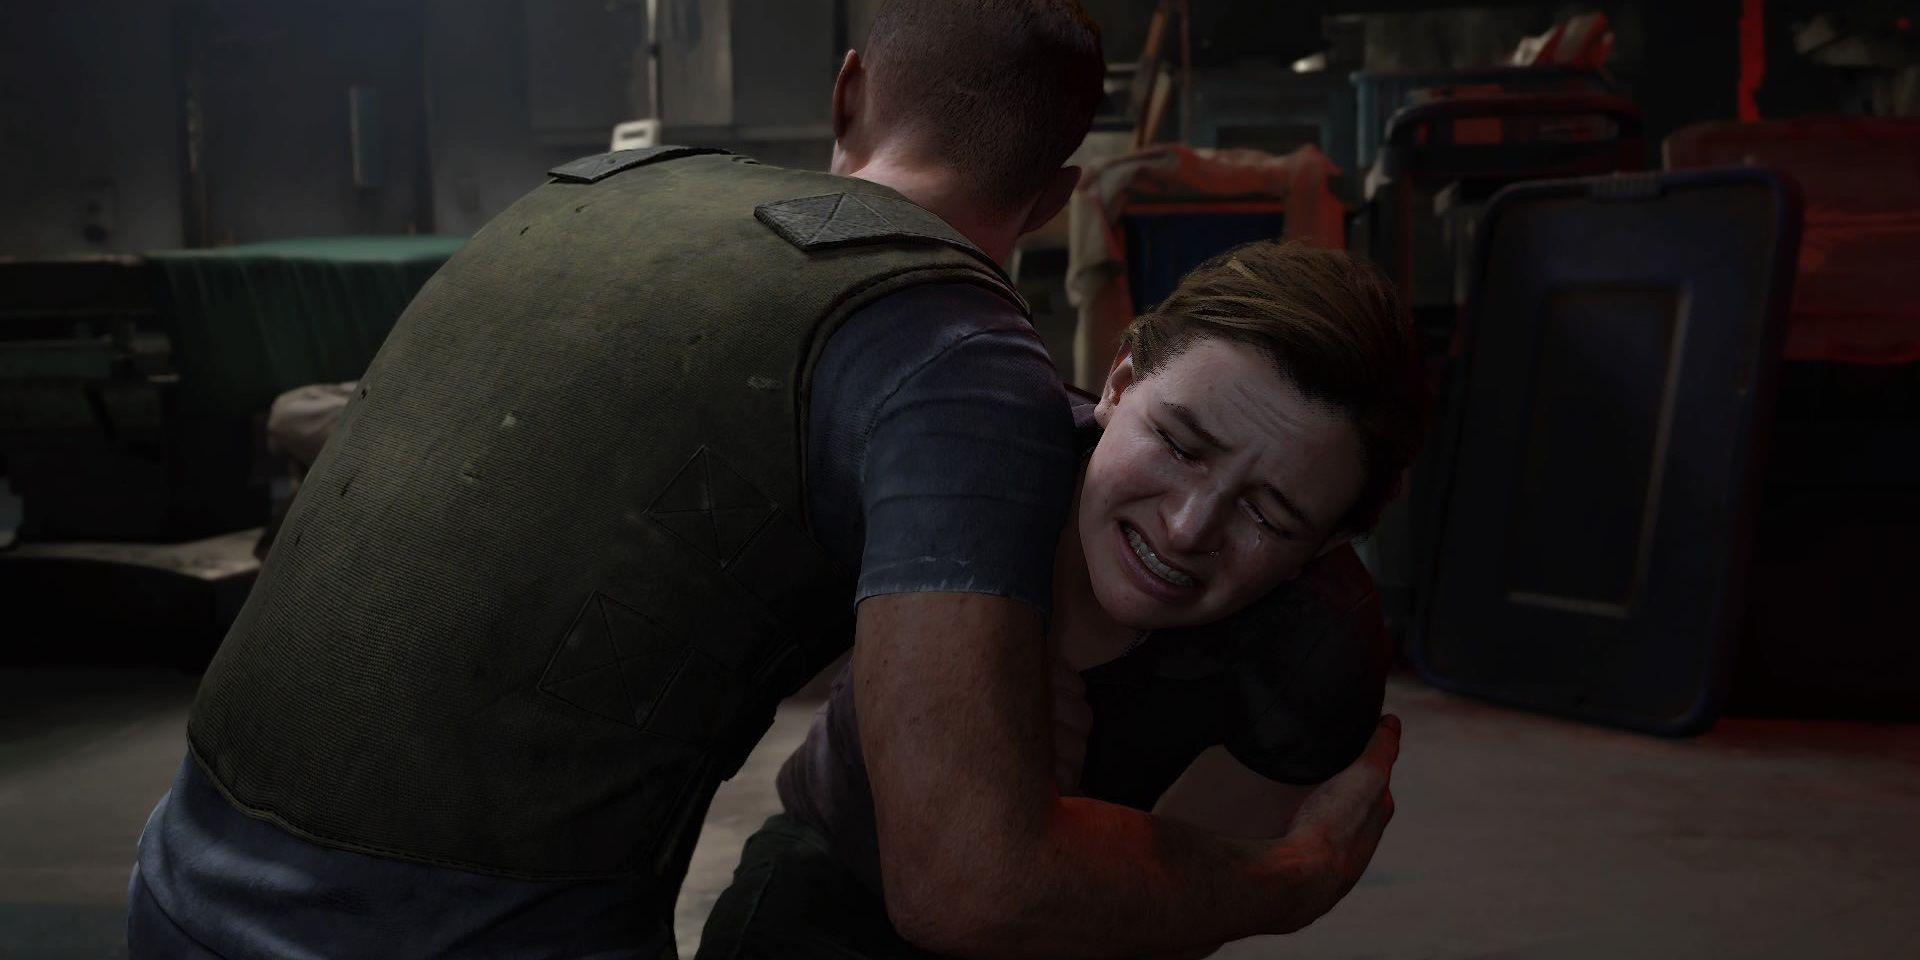 Abby chorando nos braços de Owen em The Last of Us Part II